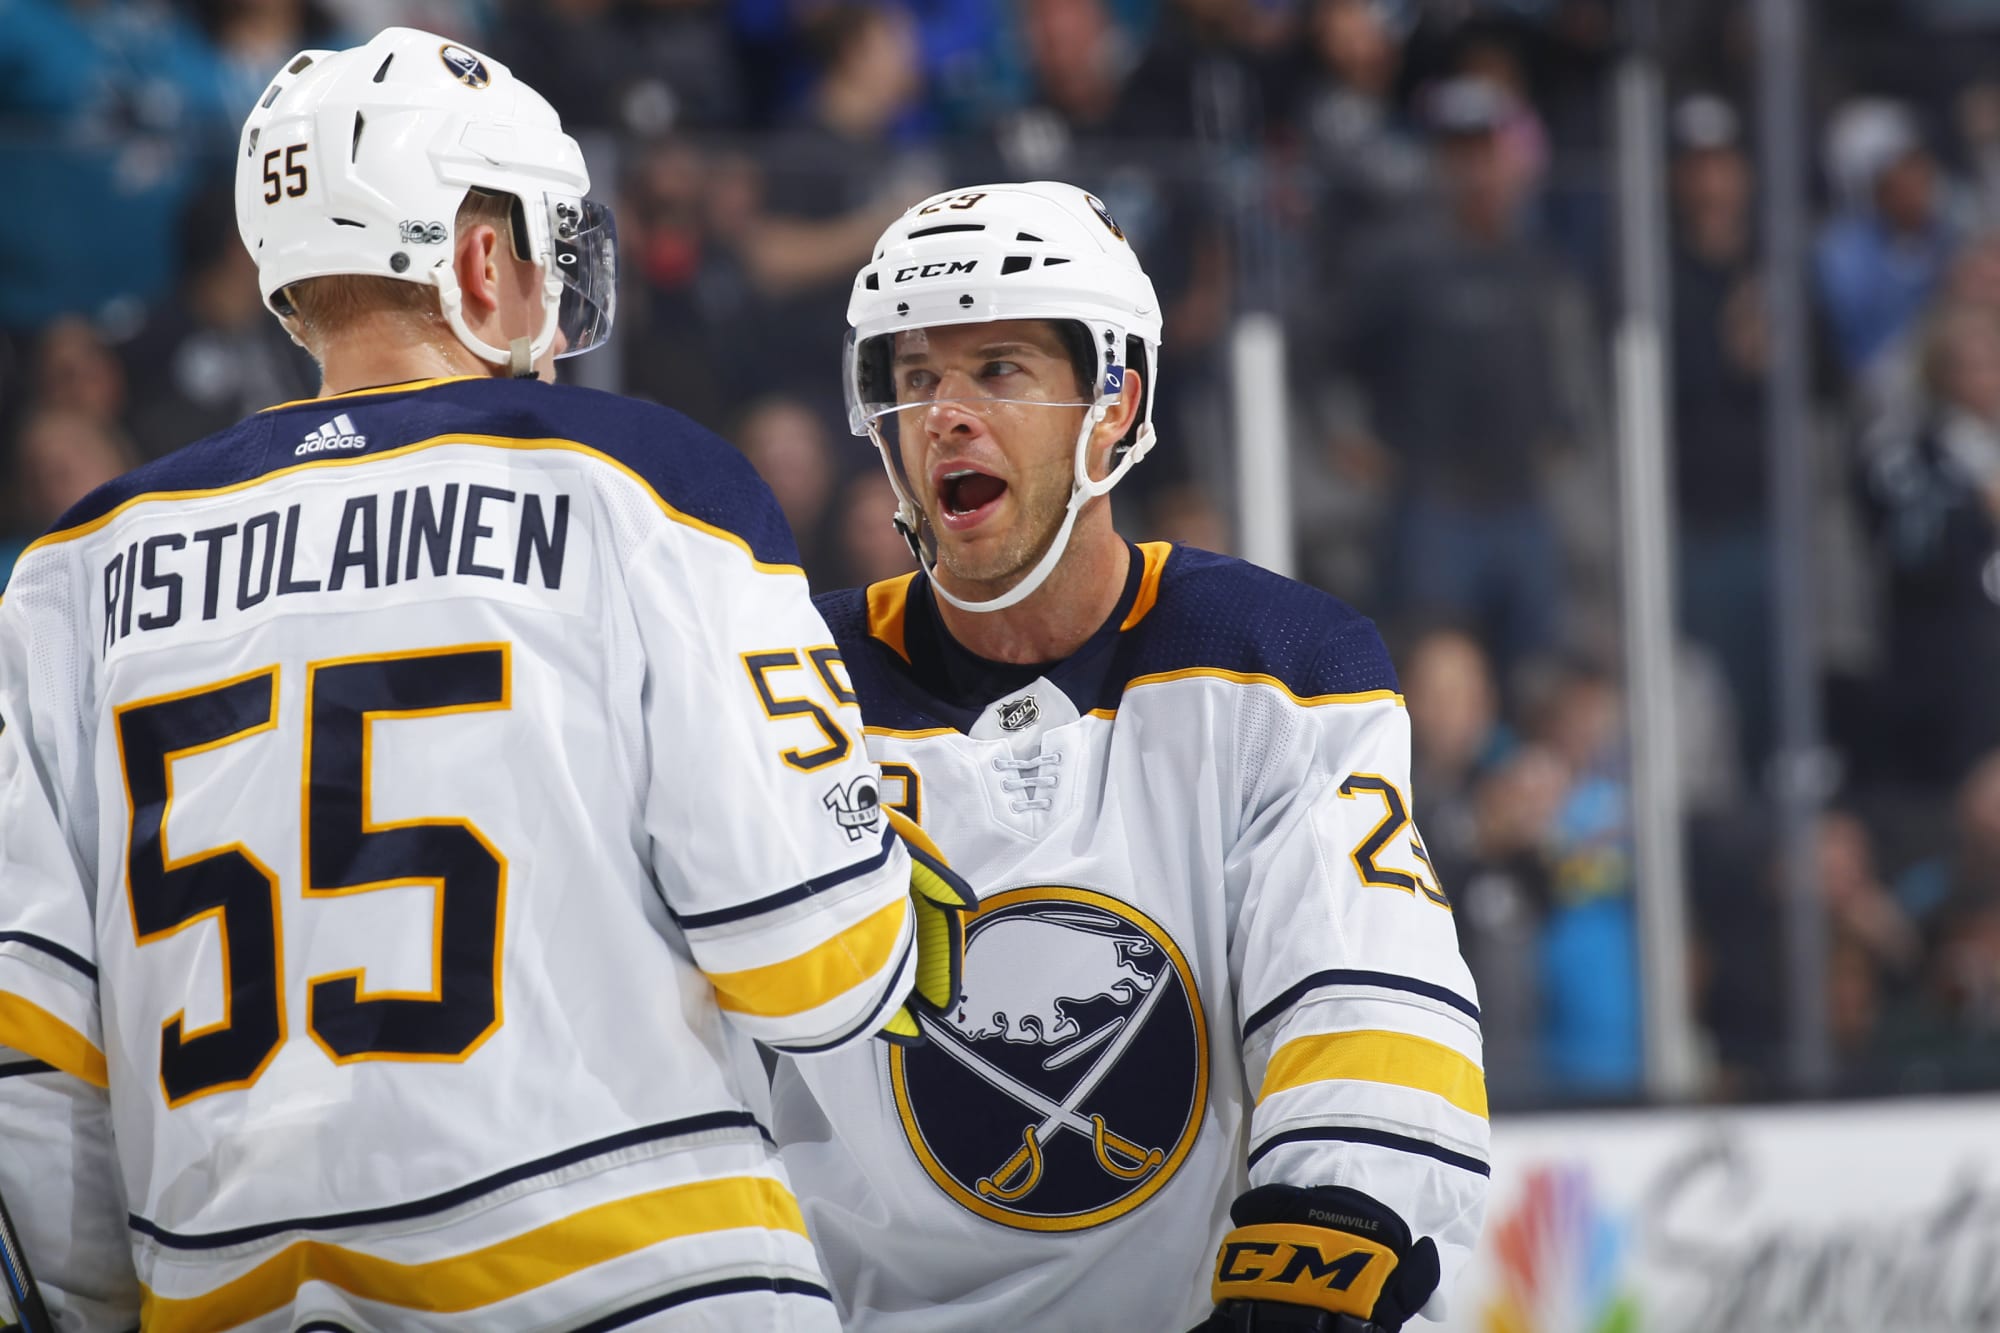 NHL Trade Chatter: Does Ristolainen Make Sense For The Bruins?